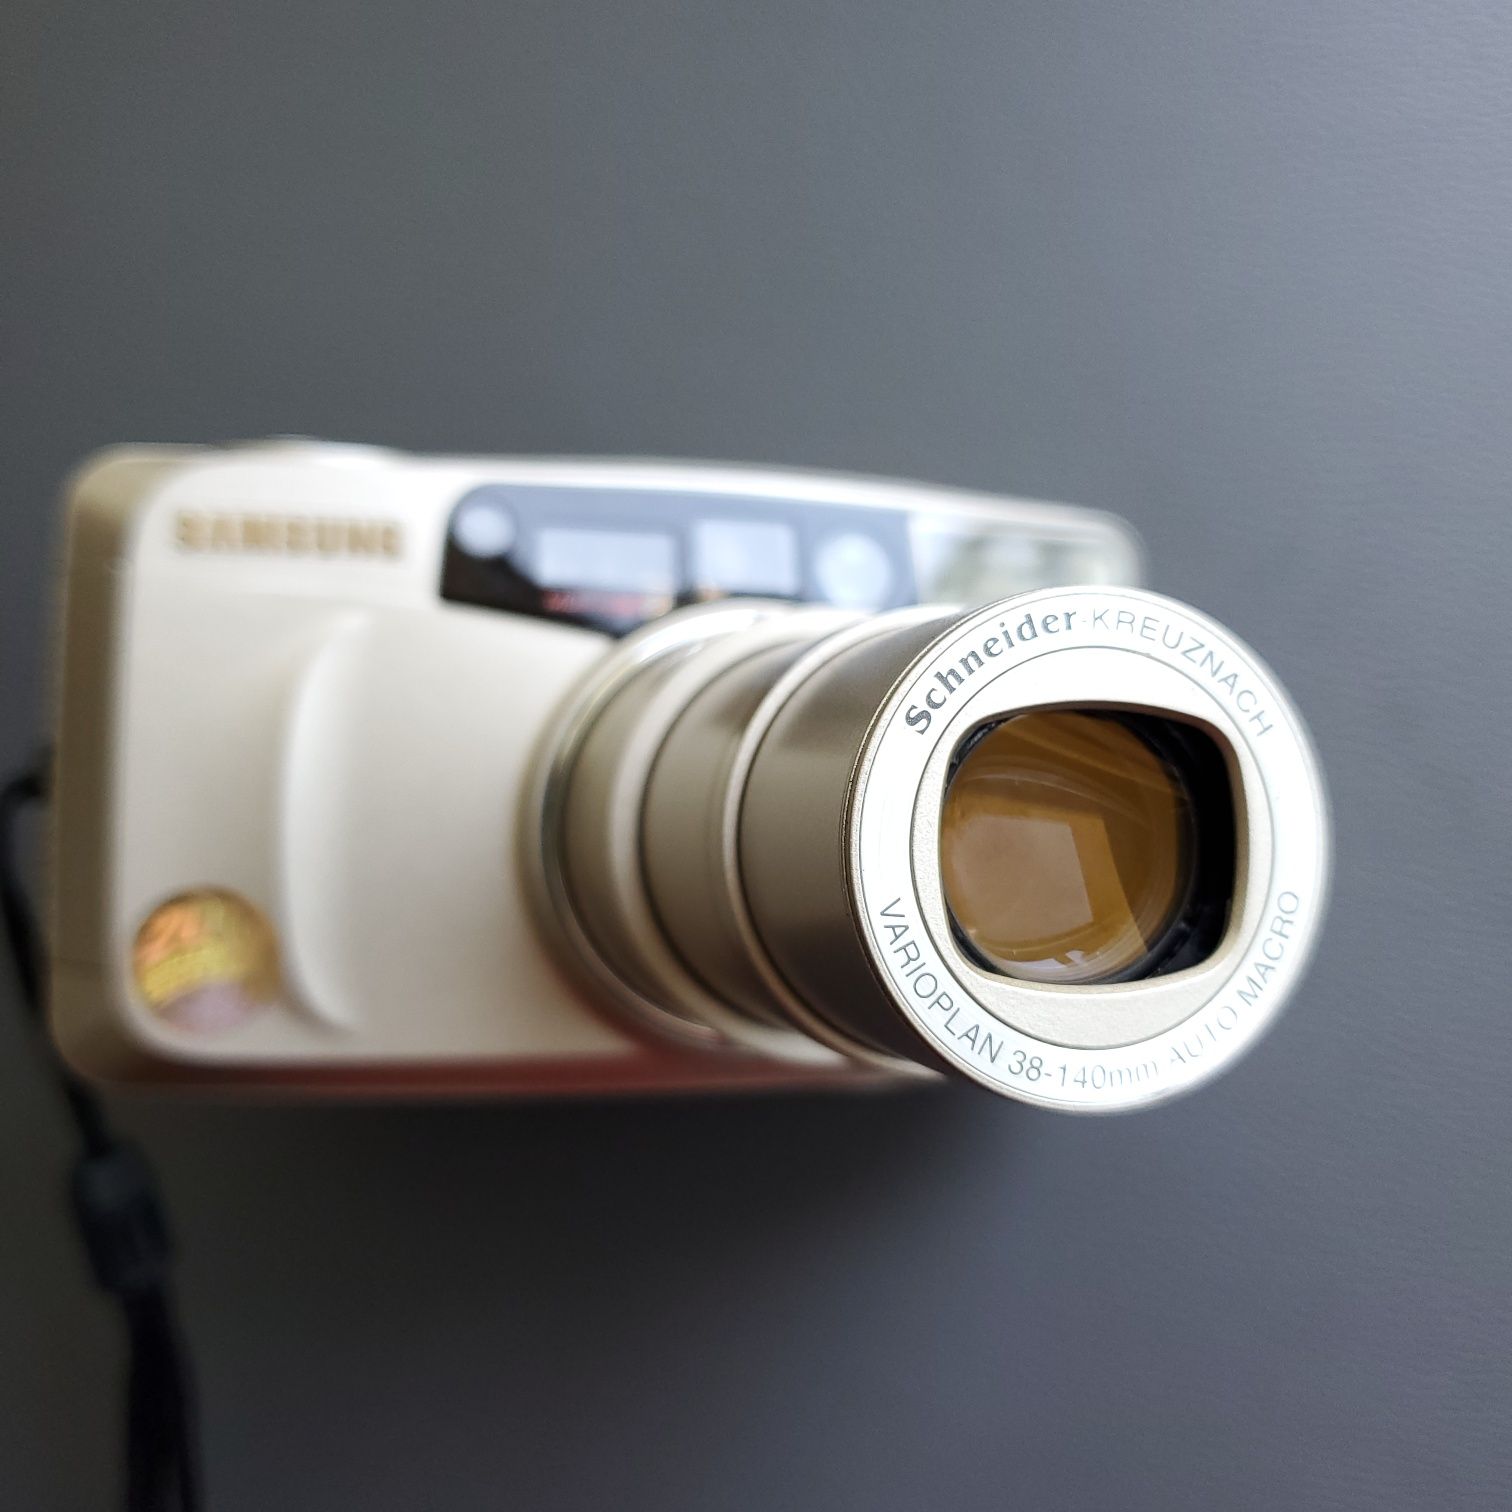 Пленочный премиум-компакт фотоаппарат Samsung Evoca 140s тестирован